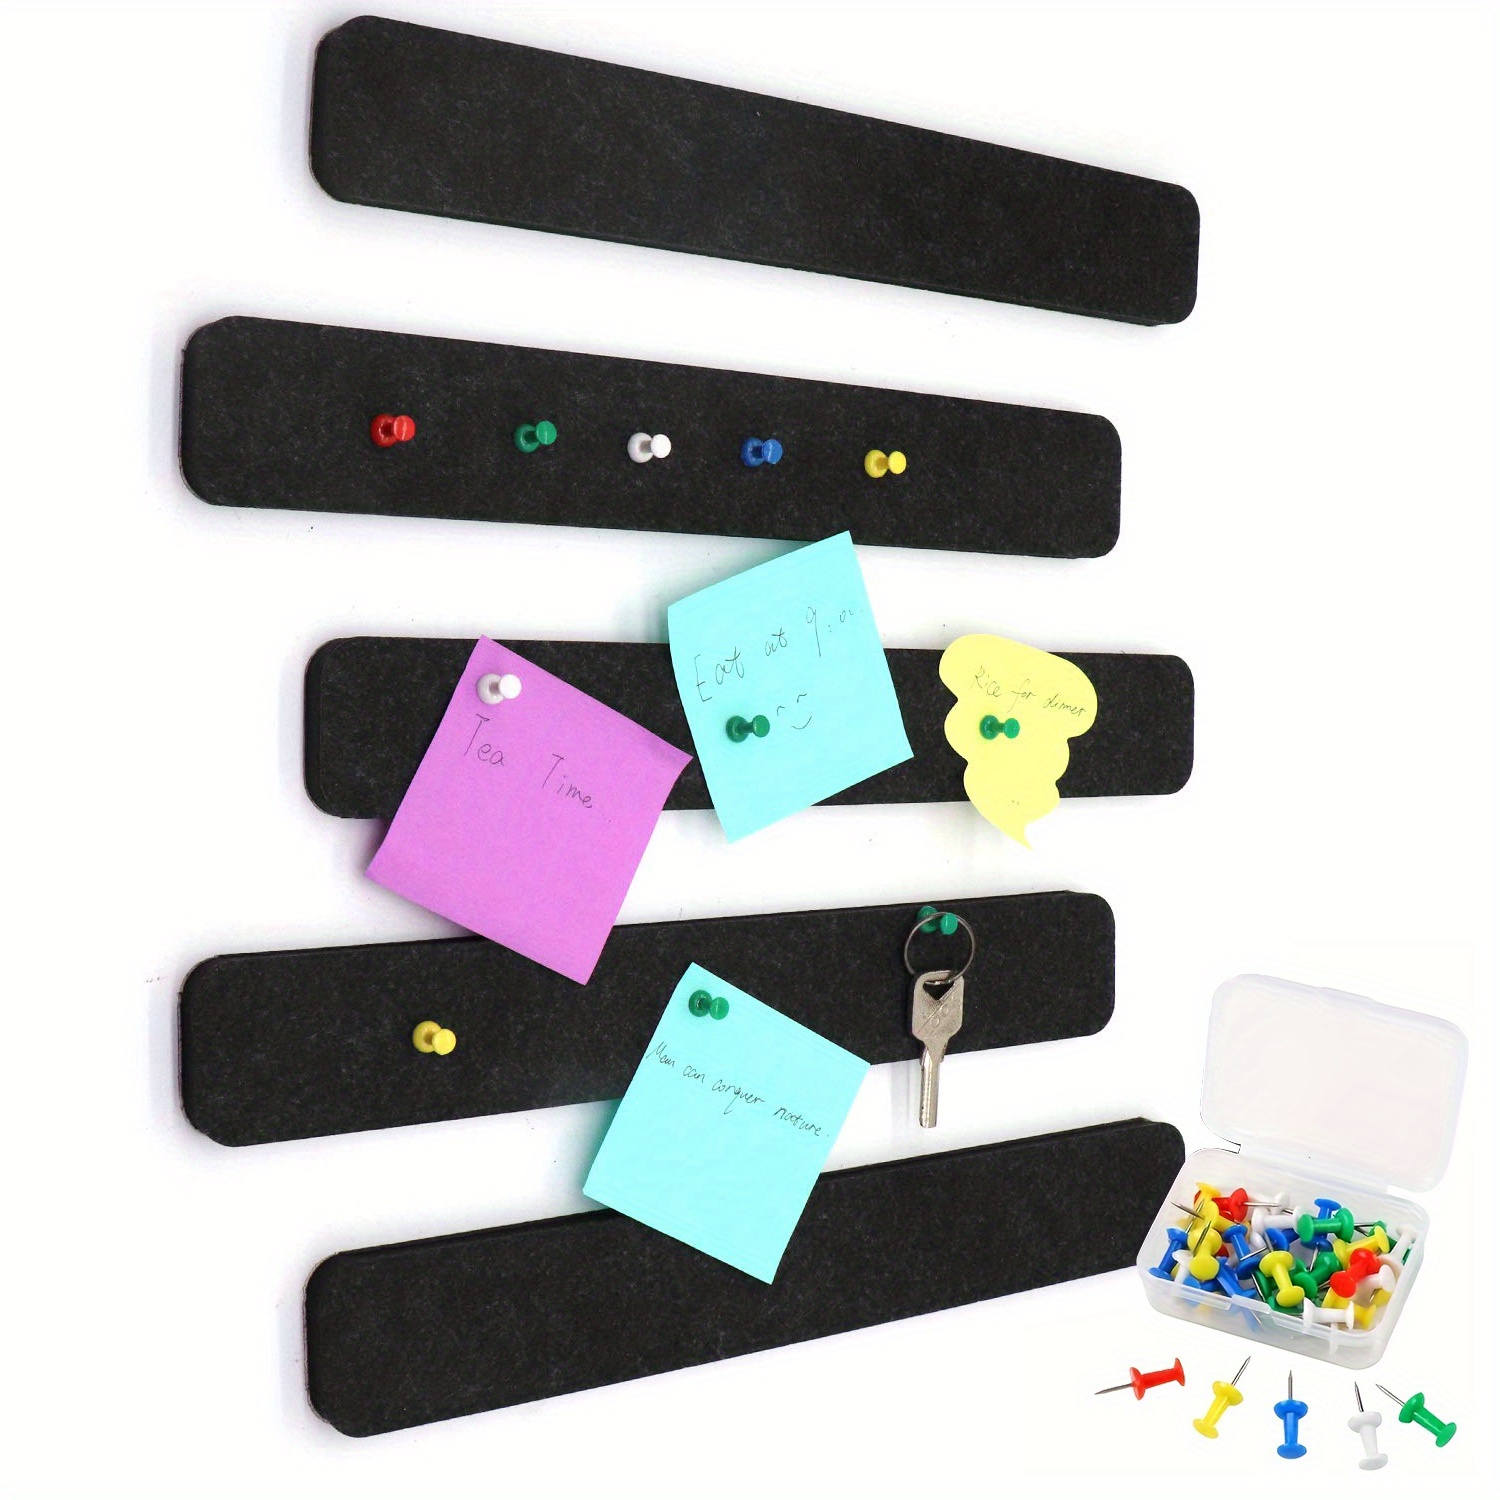 5Pcs Felt Bulletin Board Bar Strips, Self-Adhesive Cork Board